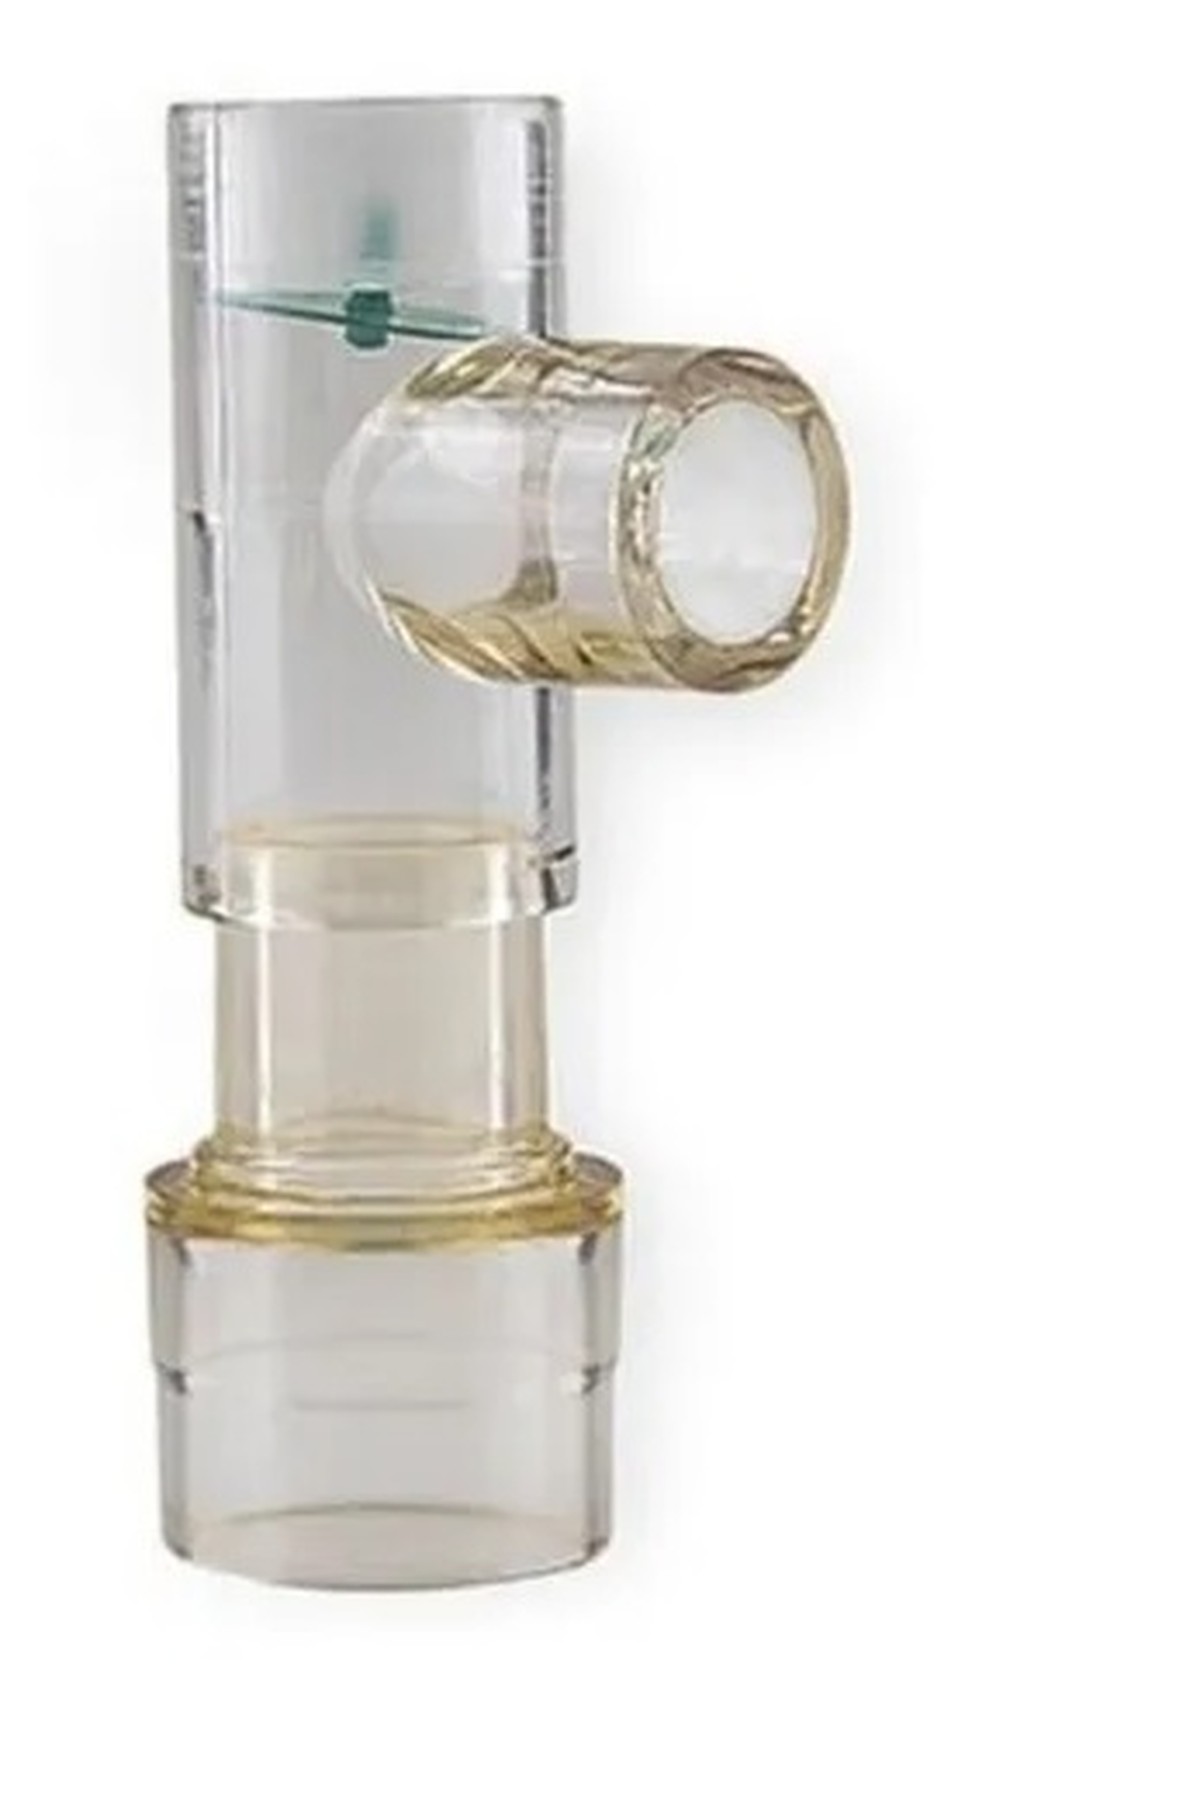 Foto do produto Tubo T com válvula unidirecional para Kit EPAP VENTCARE